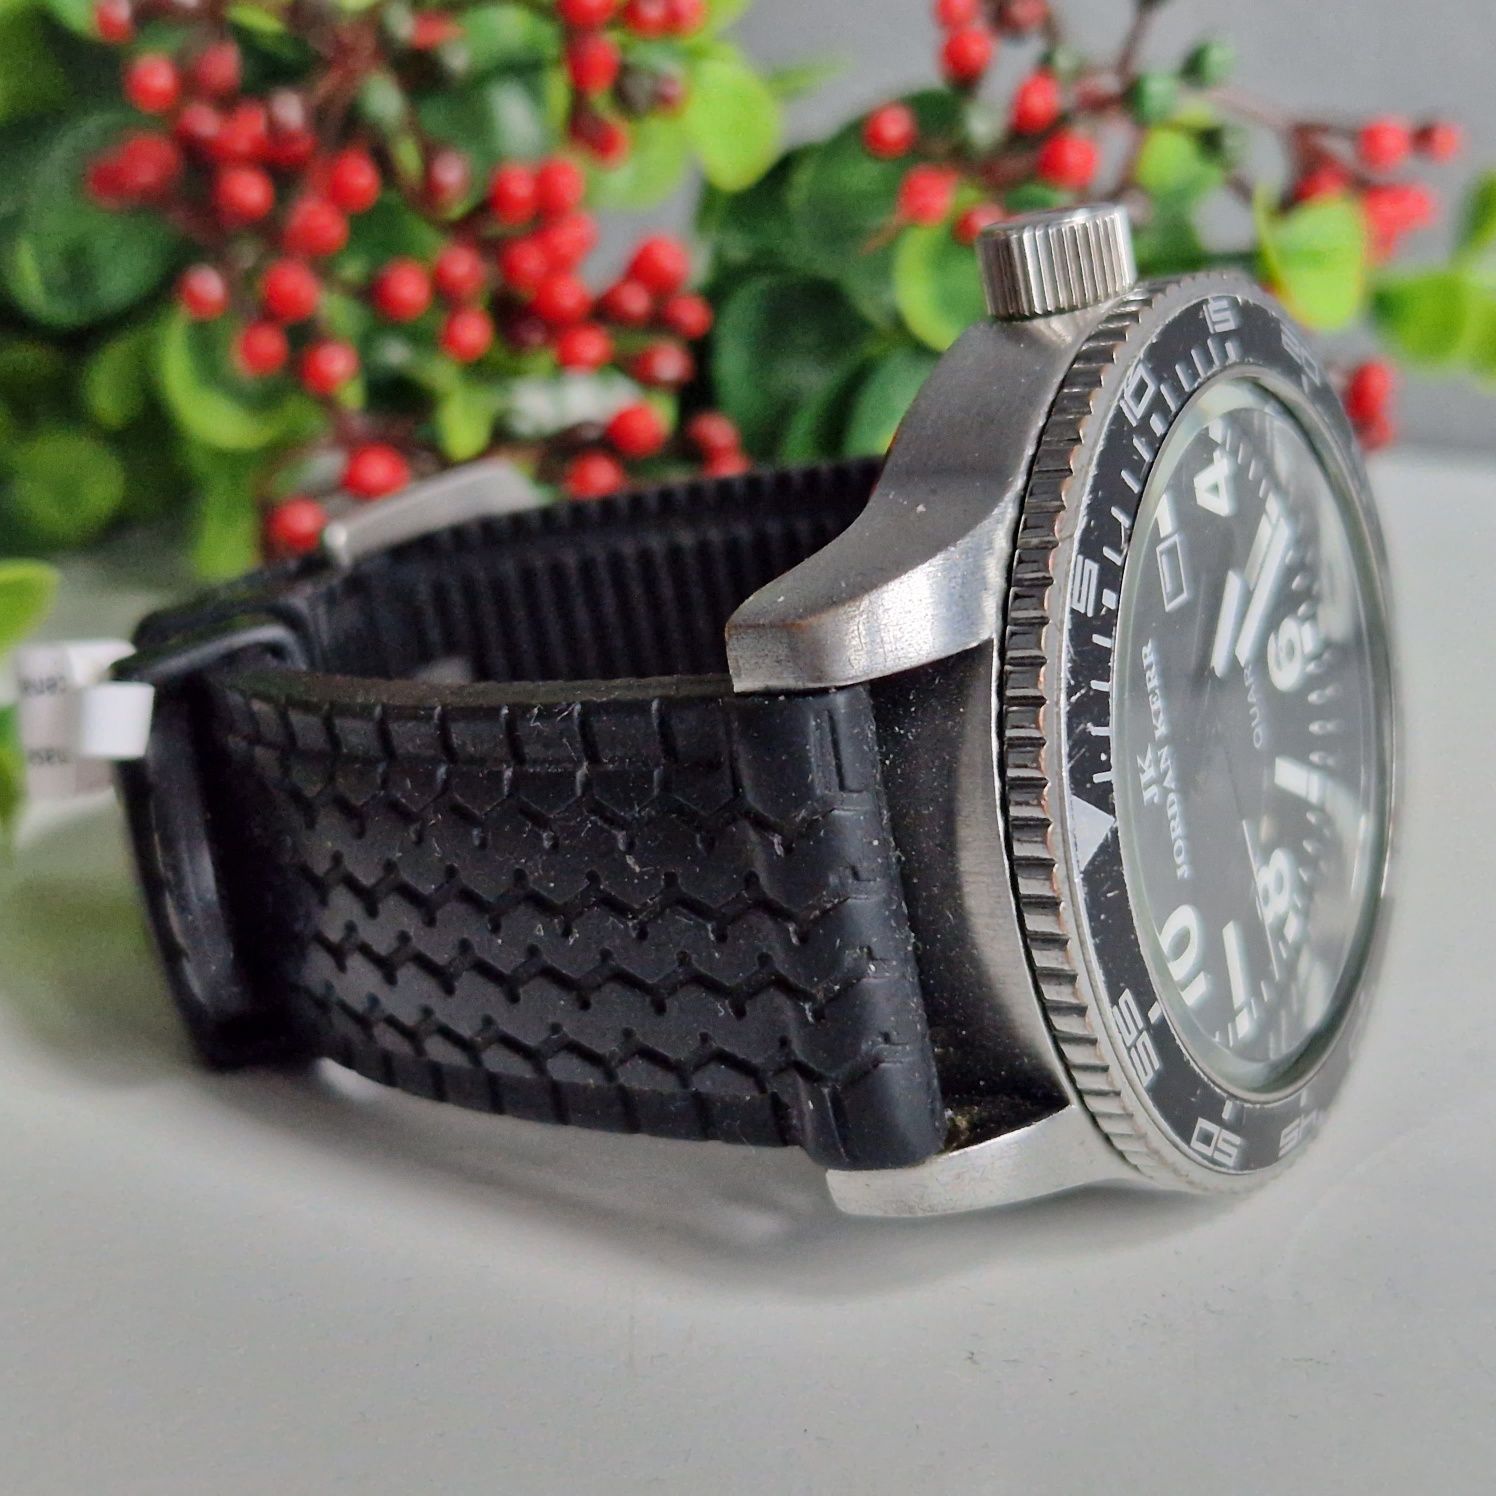 Męski zegarek duży Jordan Keer datownik M781G